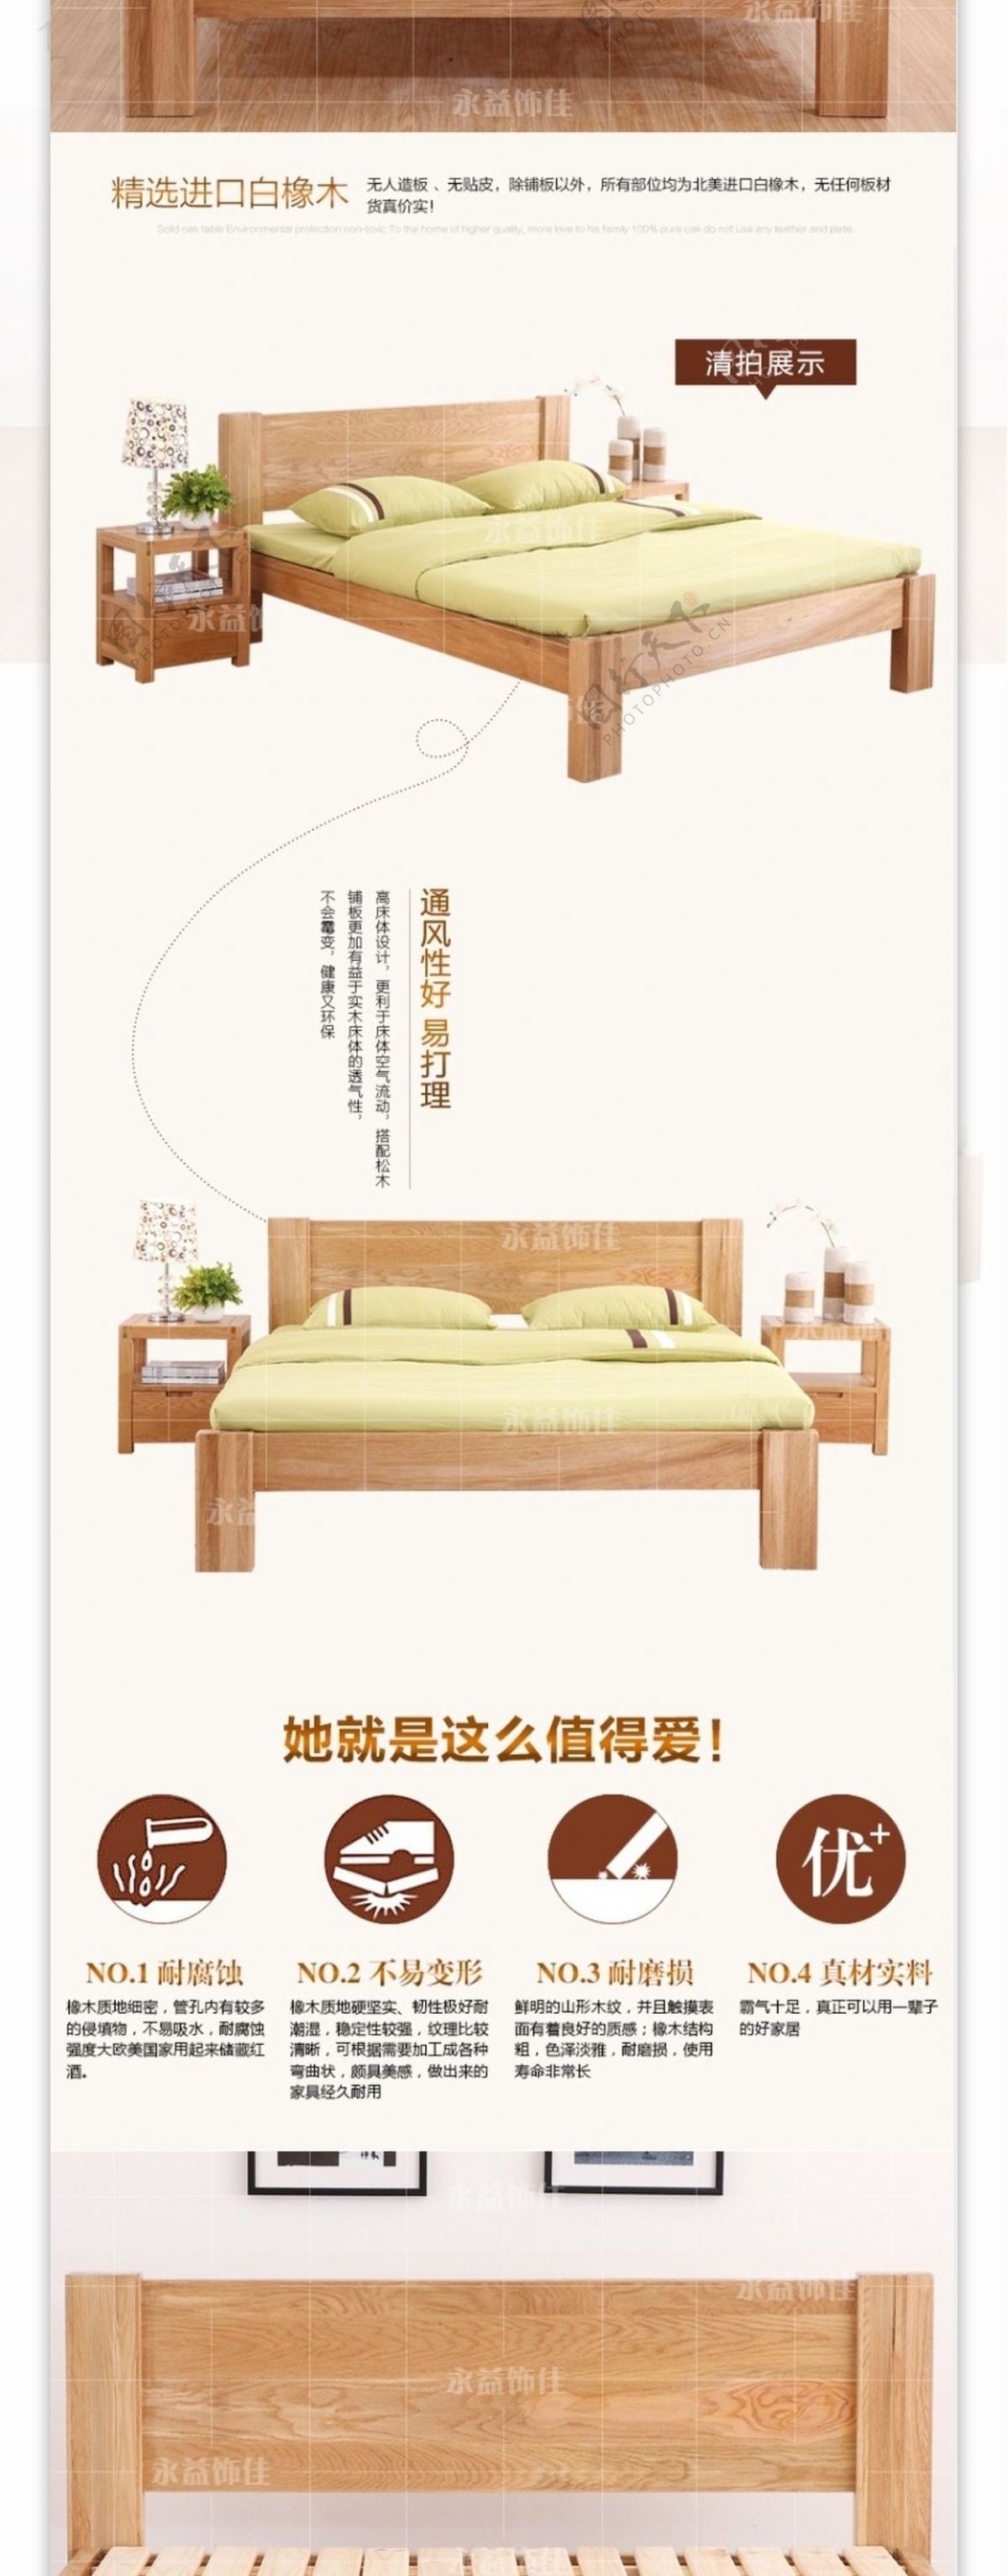 橡木实木床详情页中国风中式家具